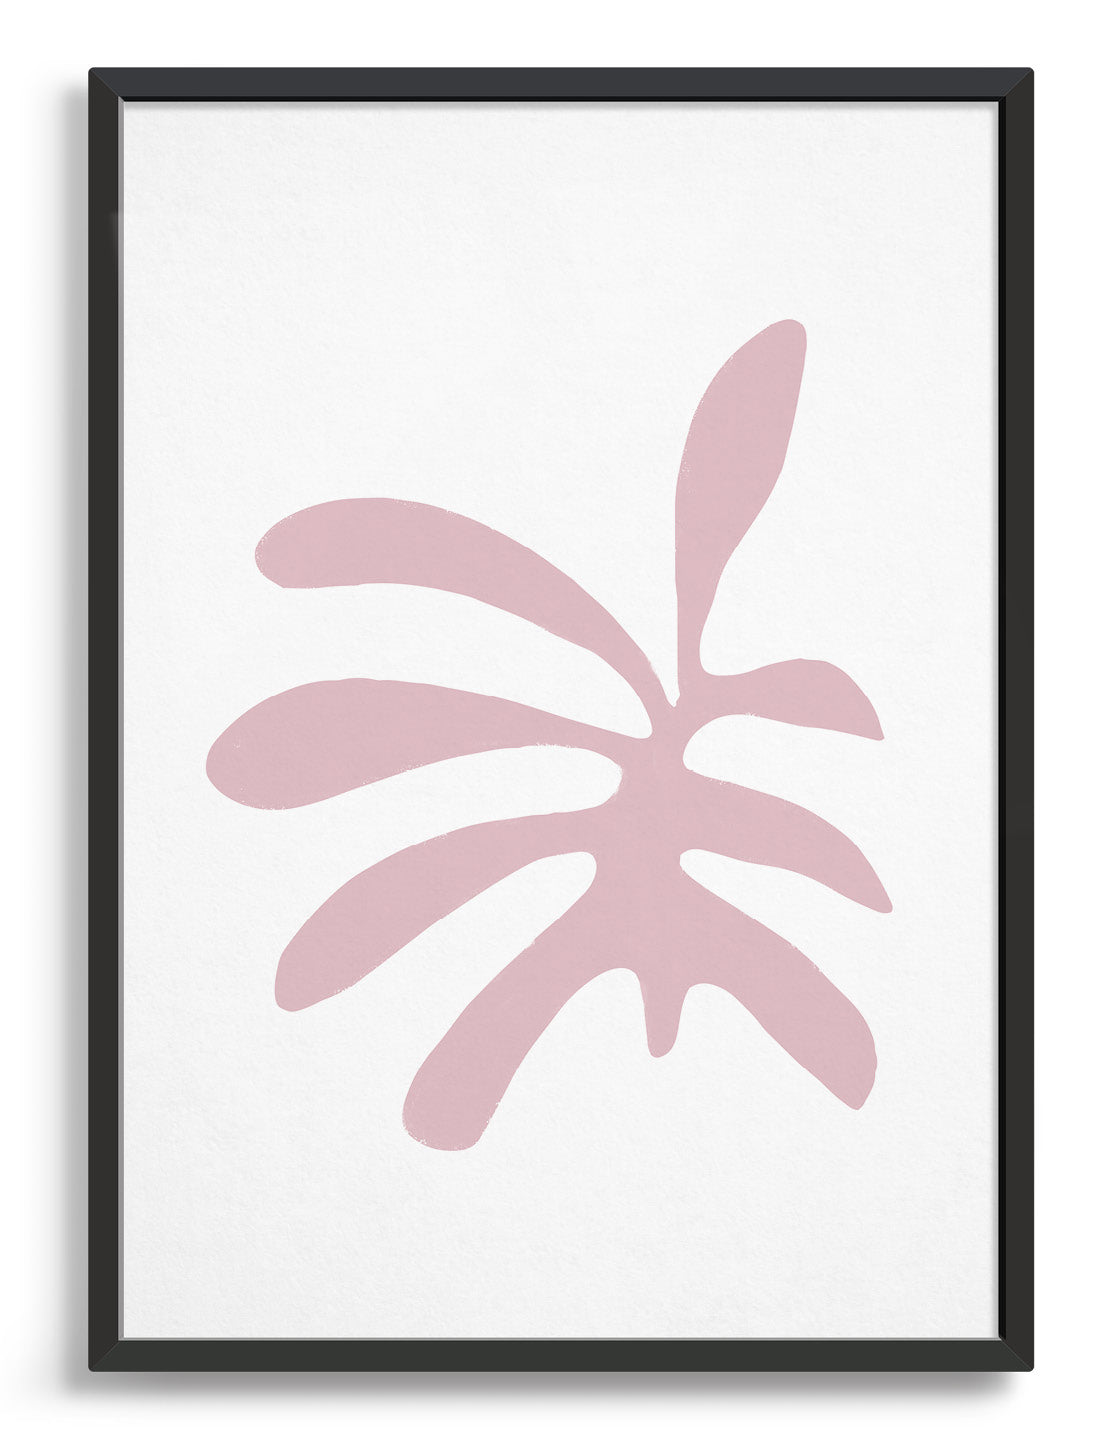 Minimal 'Matisse' style leaf